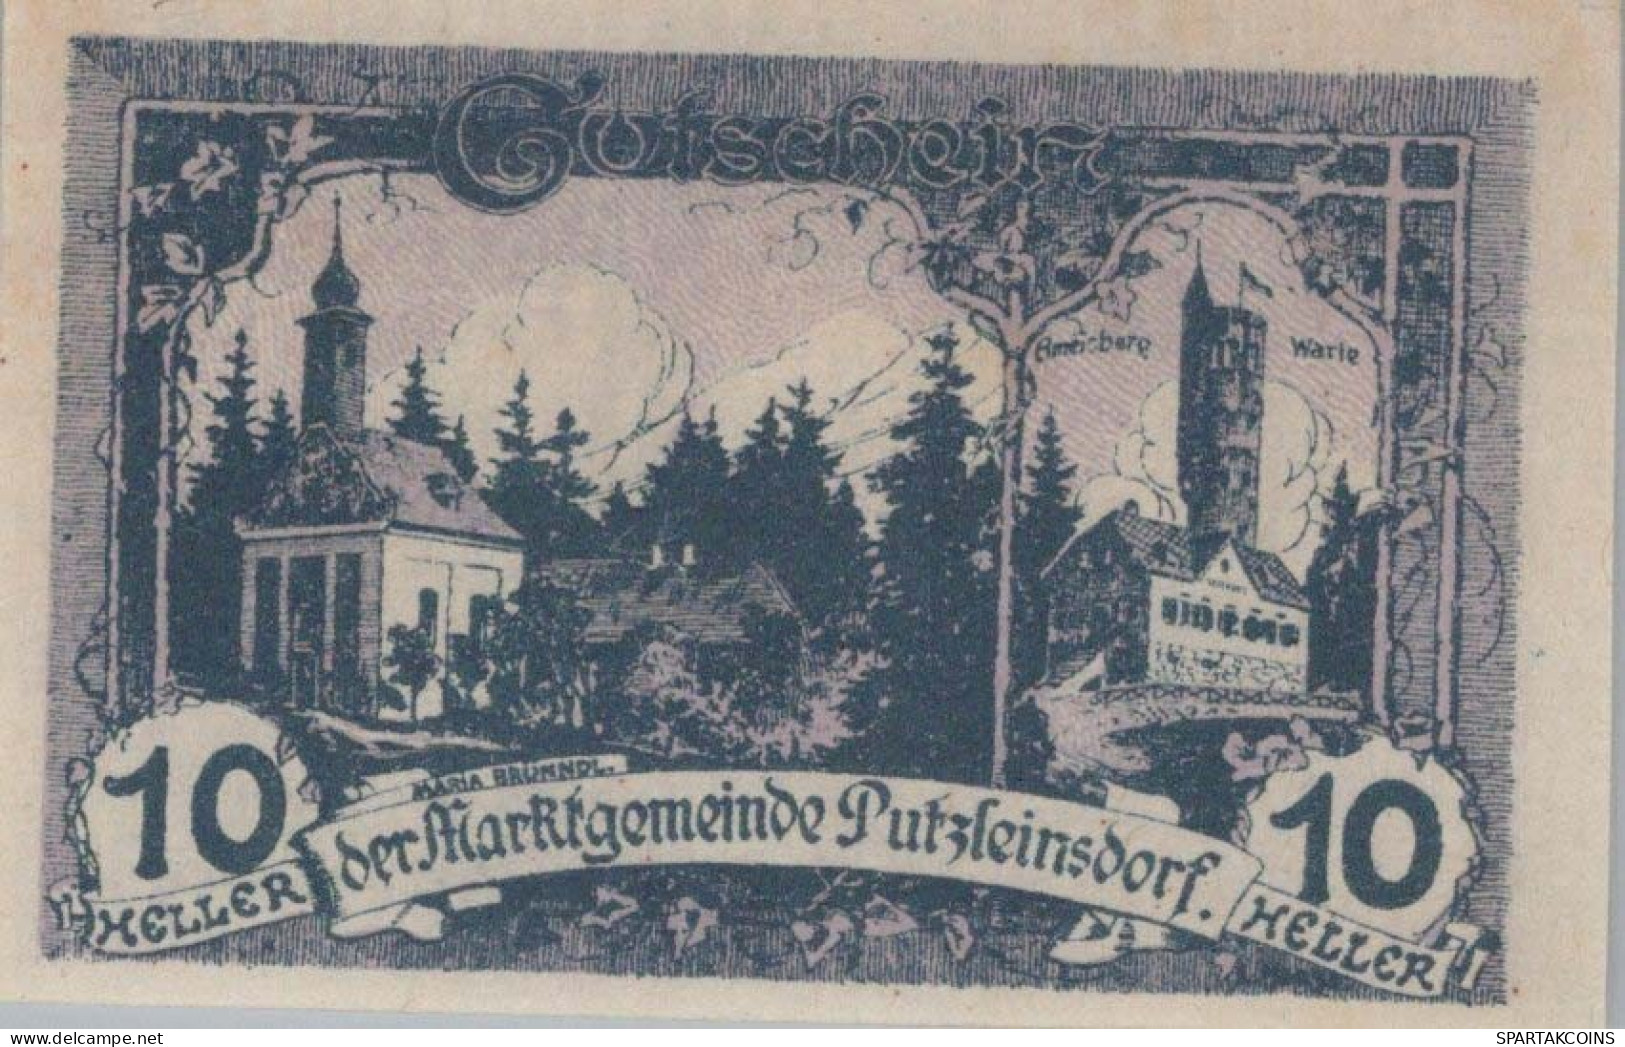 10 HELLER 1920 Stadt PUTZLEINSDORF Oberösterreich Österreich Notgeld Papiergeld Banknote #PG694 - [11] Emissioni Locali